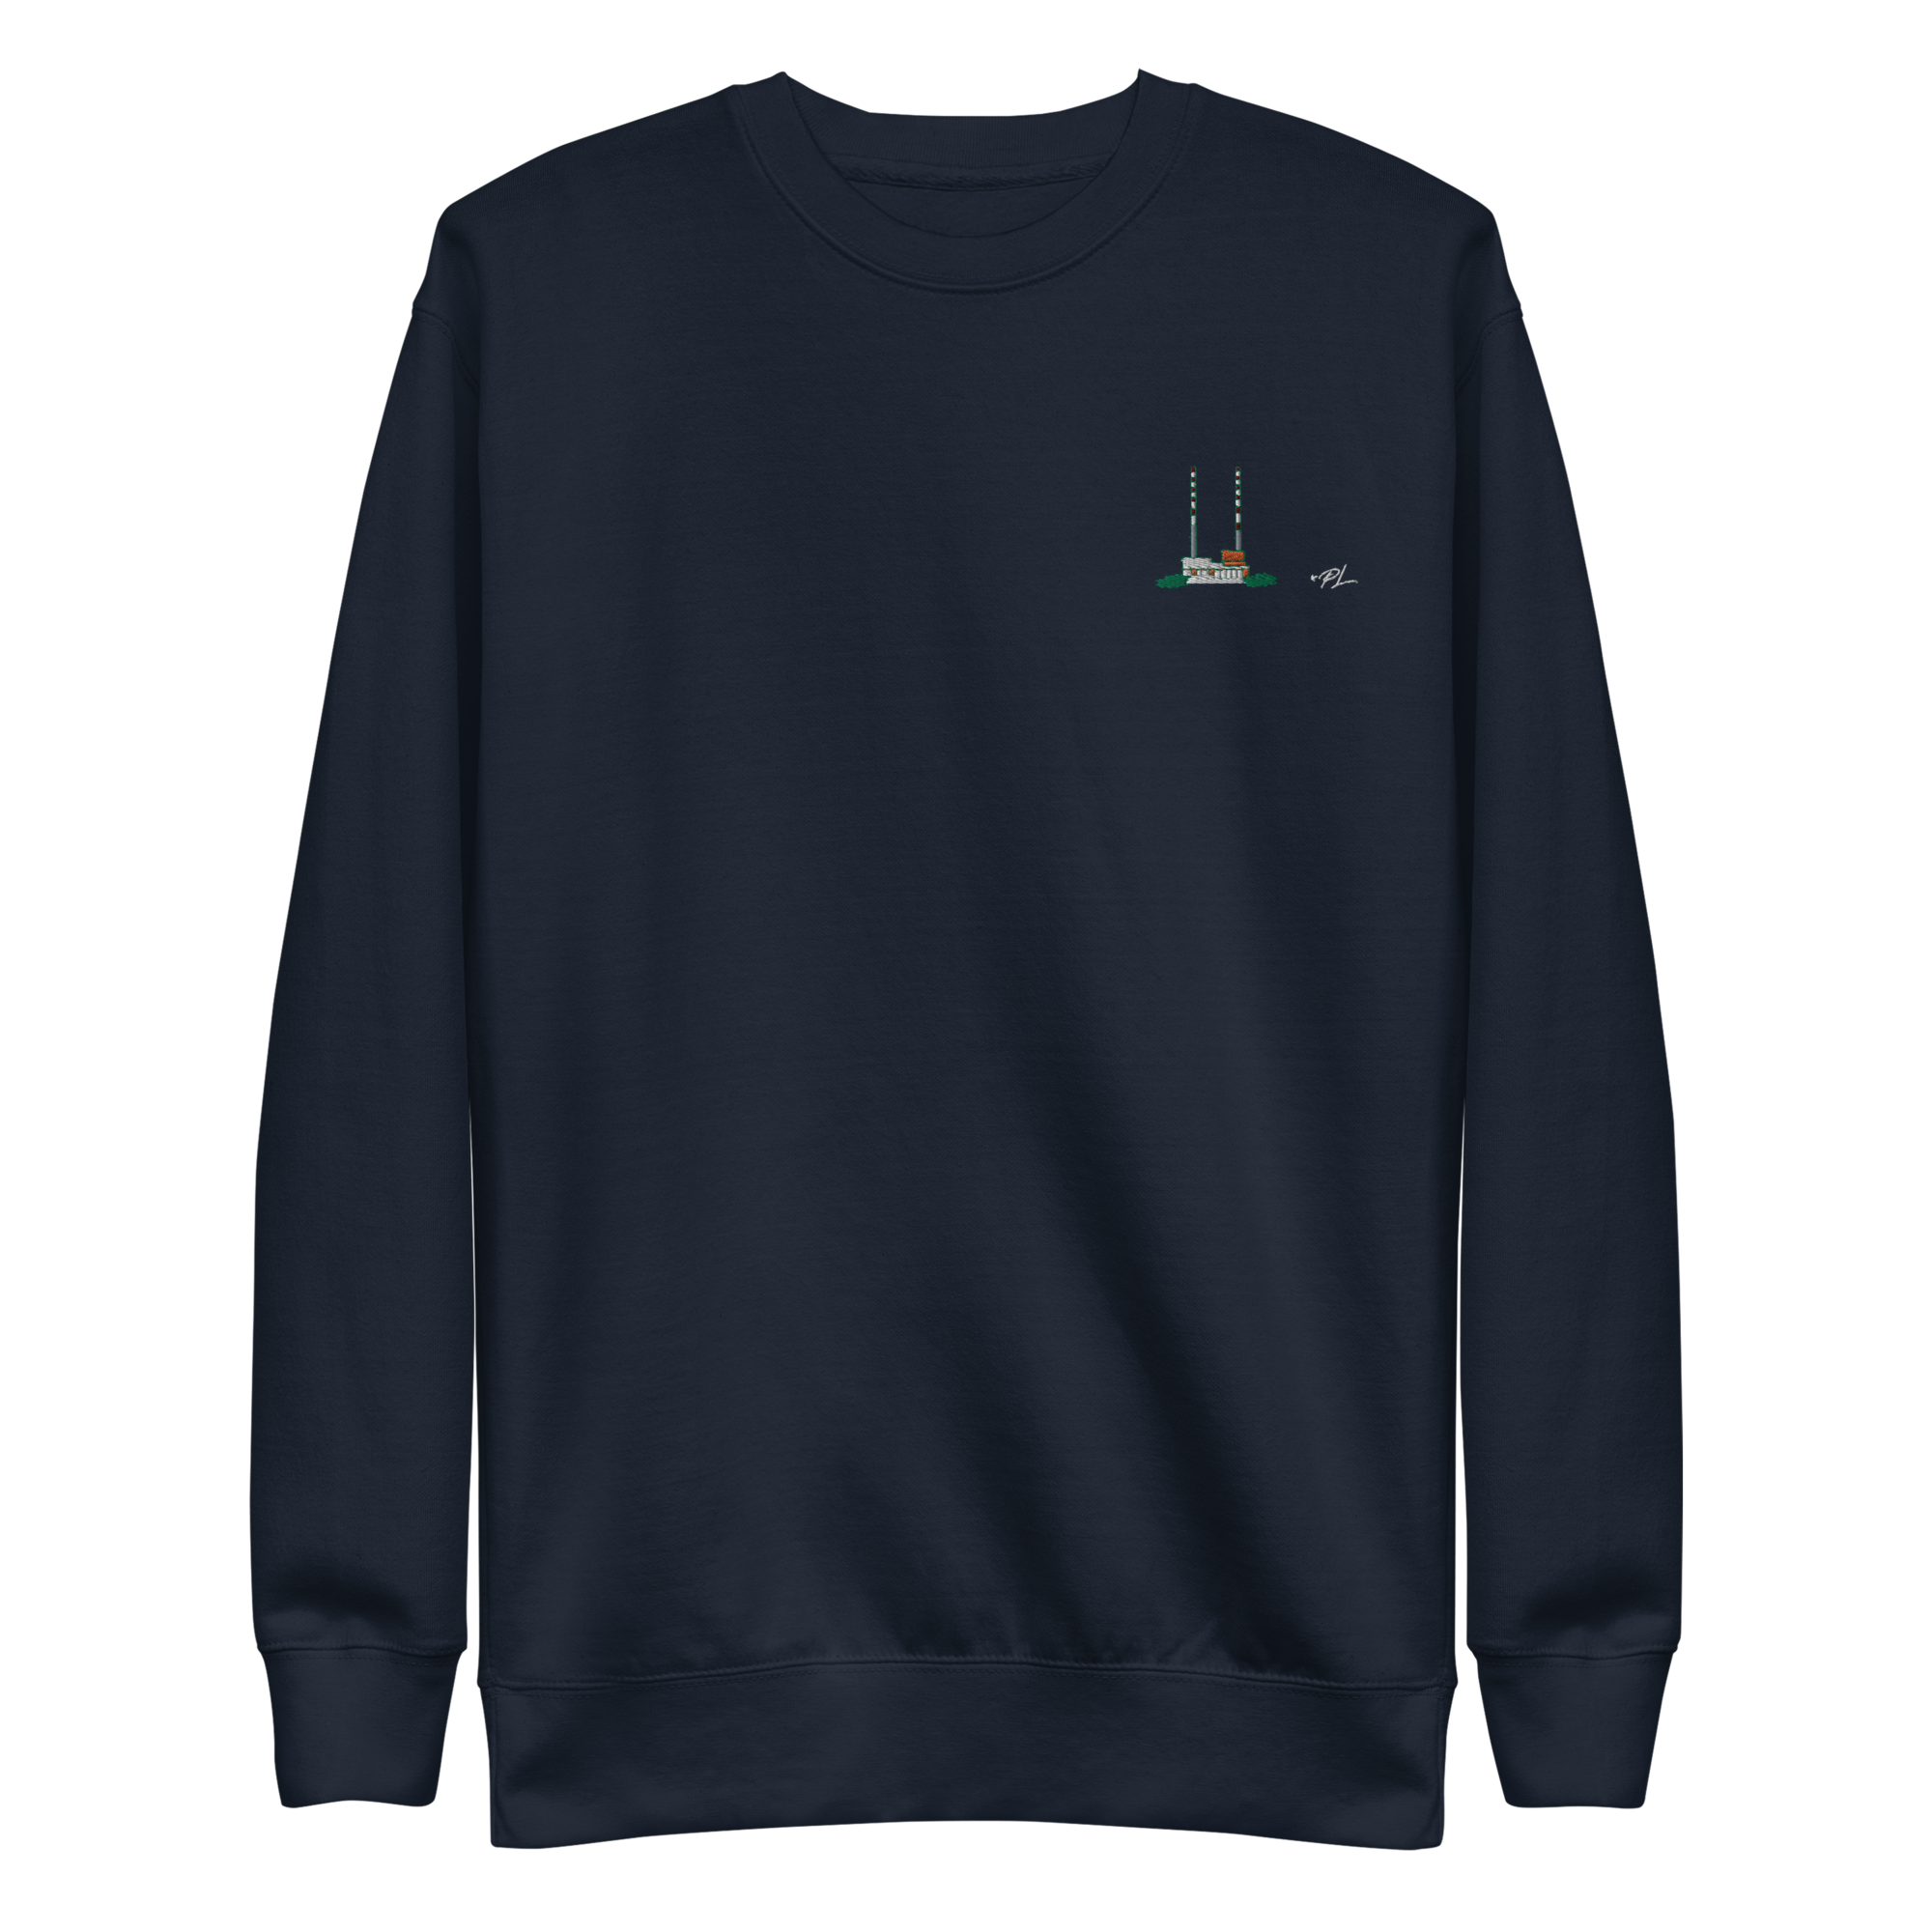 Dublin Poolbeg Chimneys Embroidered Unisex Sweatshirt